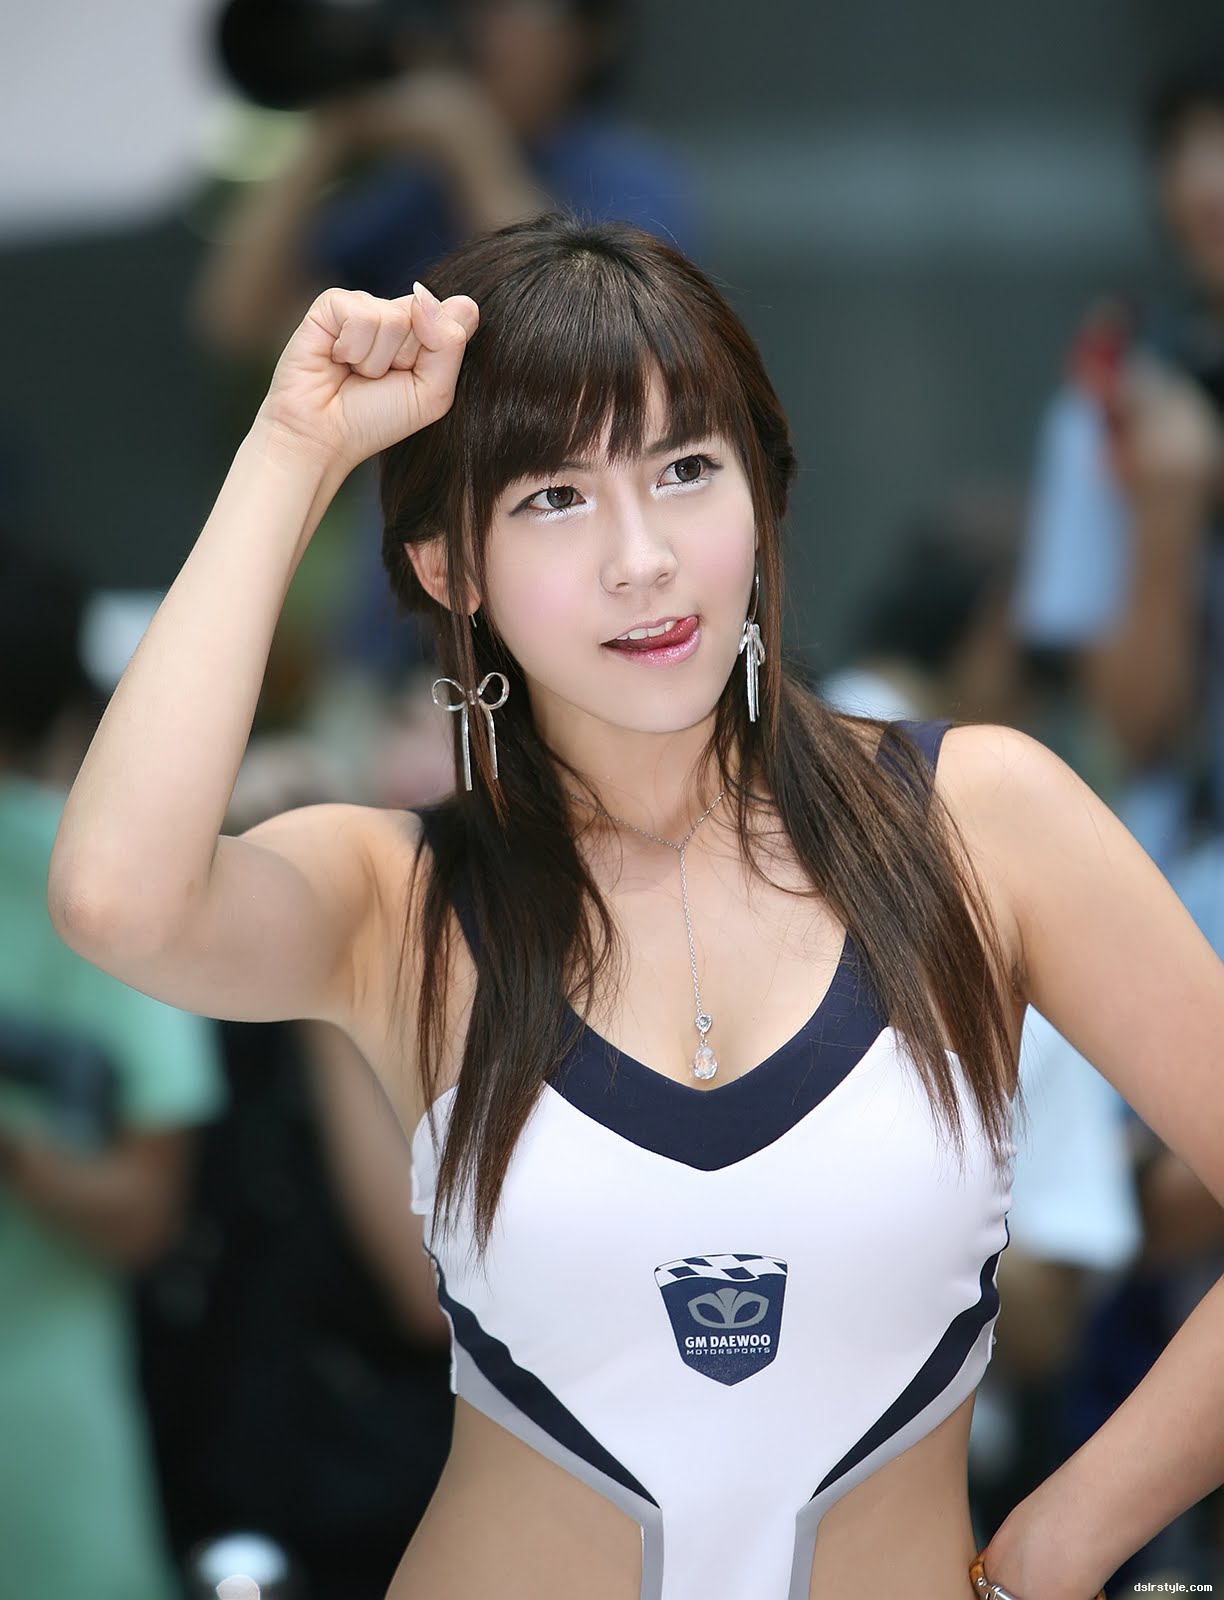 squirrel girl, gu ji sung | korean racing girls